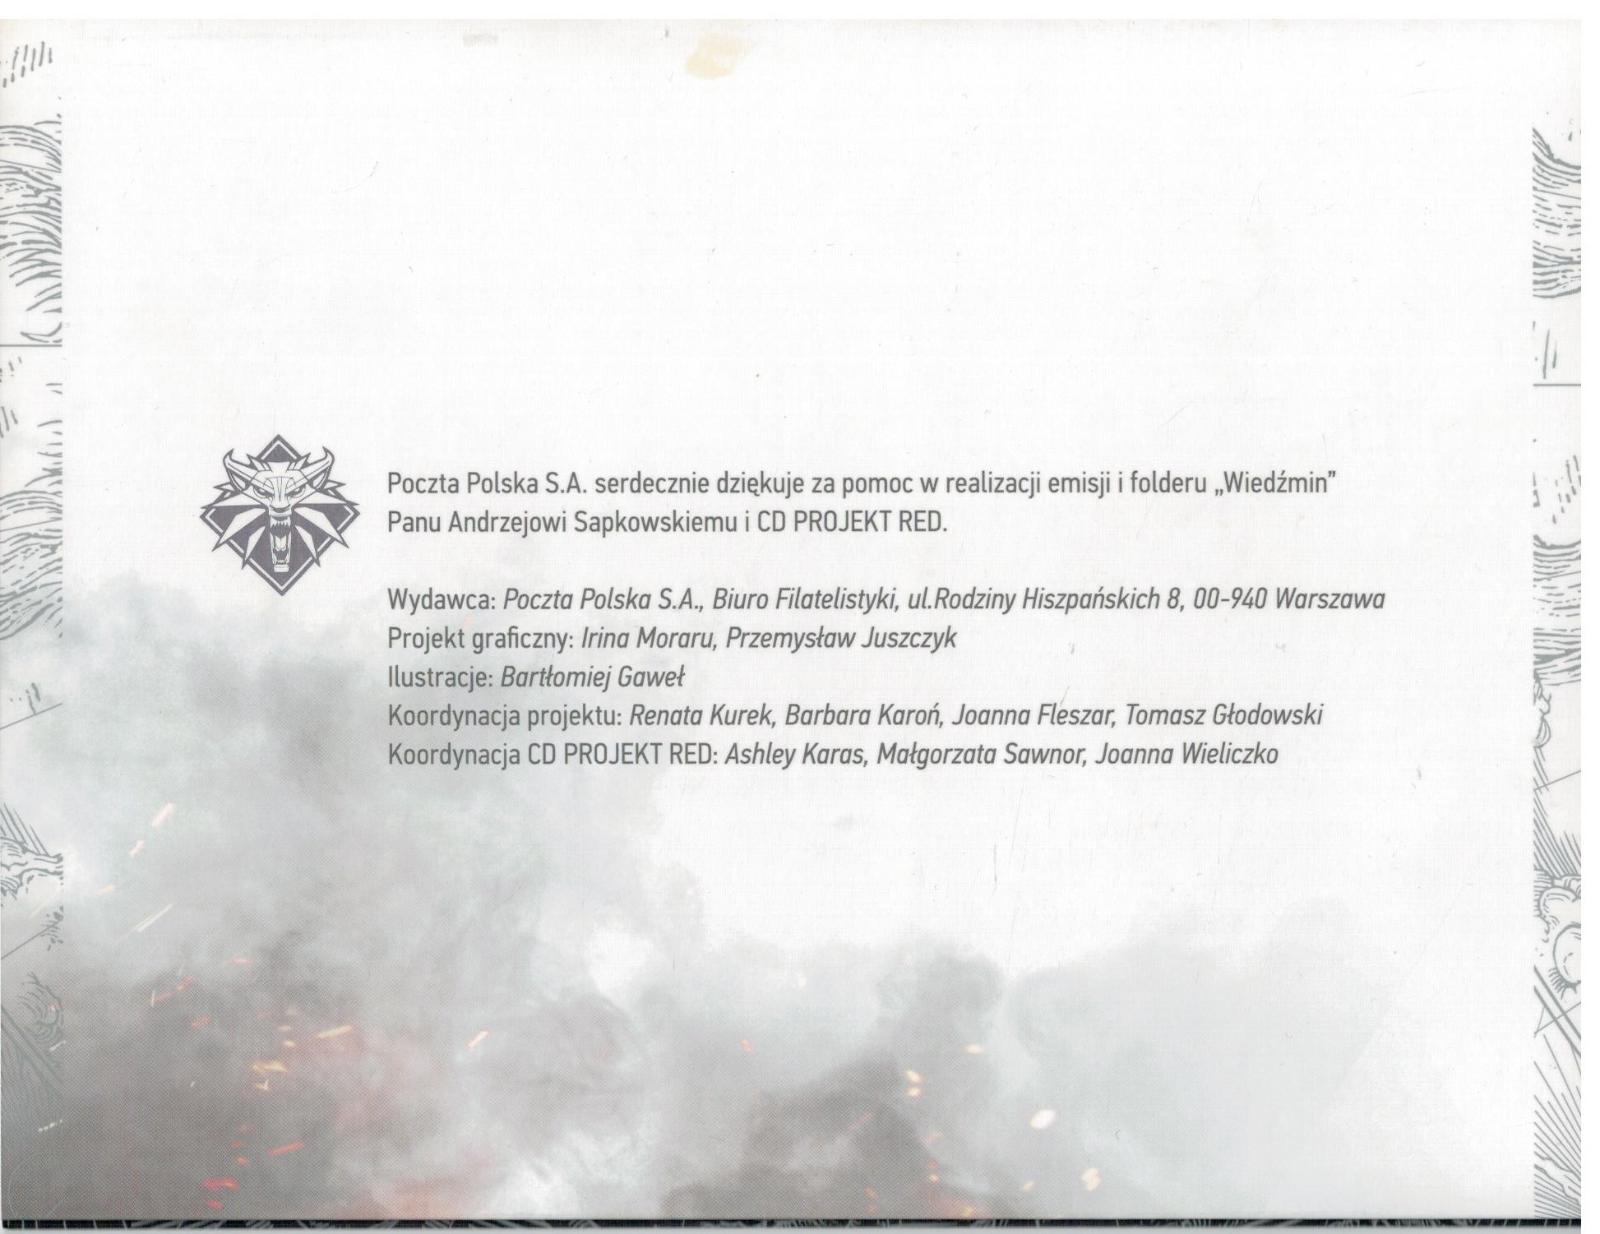 Polsko 2016 Prezentační balíček Známky aršík Zaklínač Geralt z Rivie - Filatelie